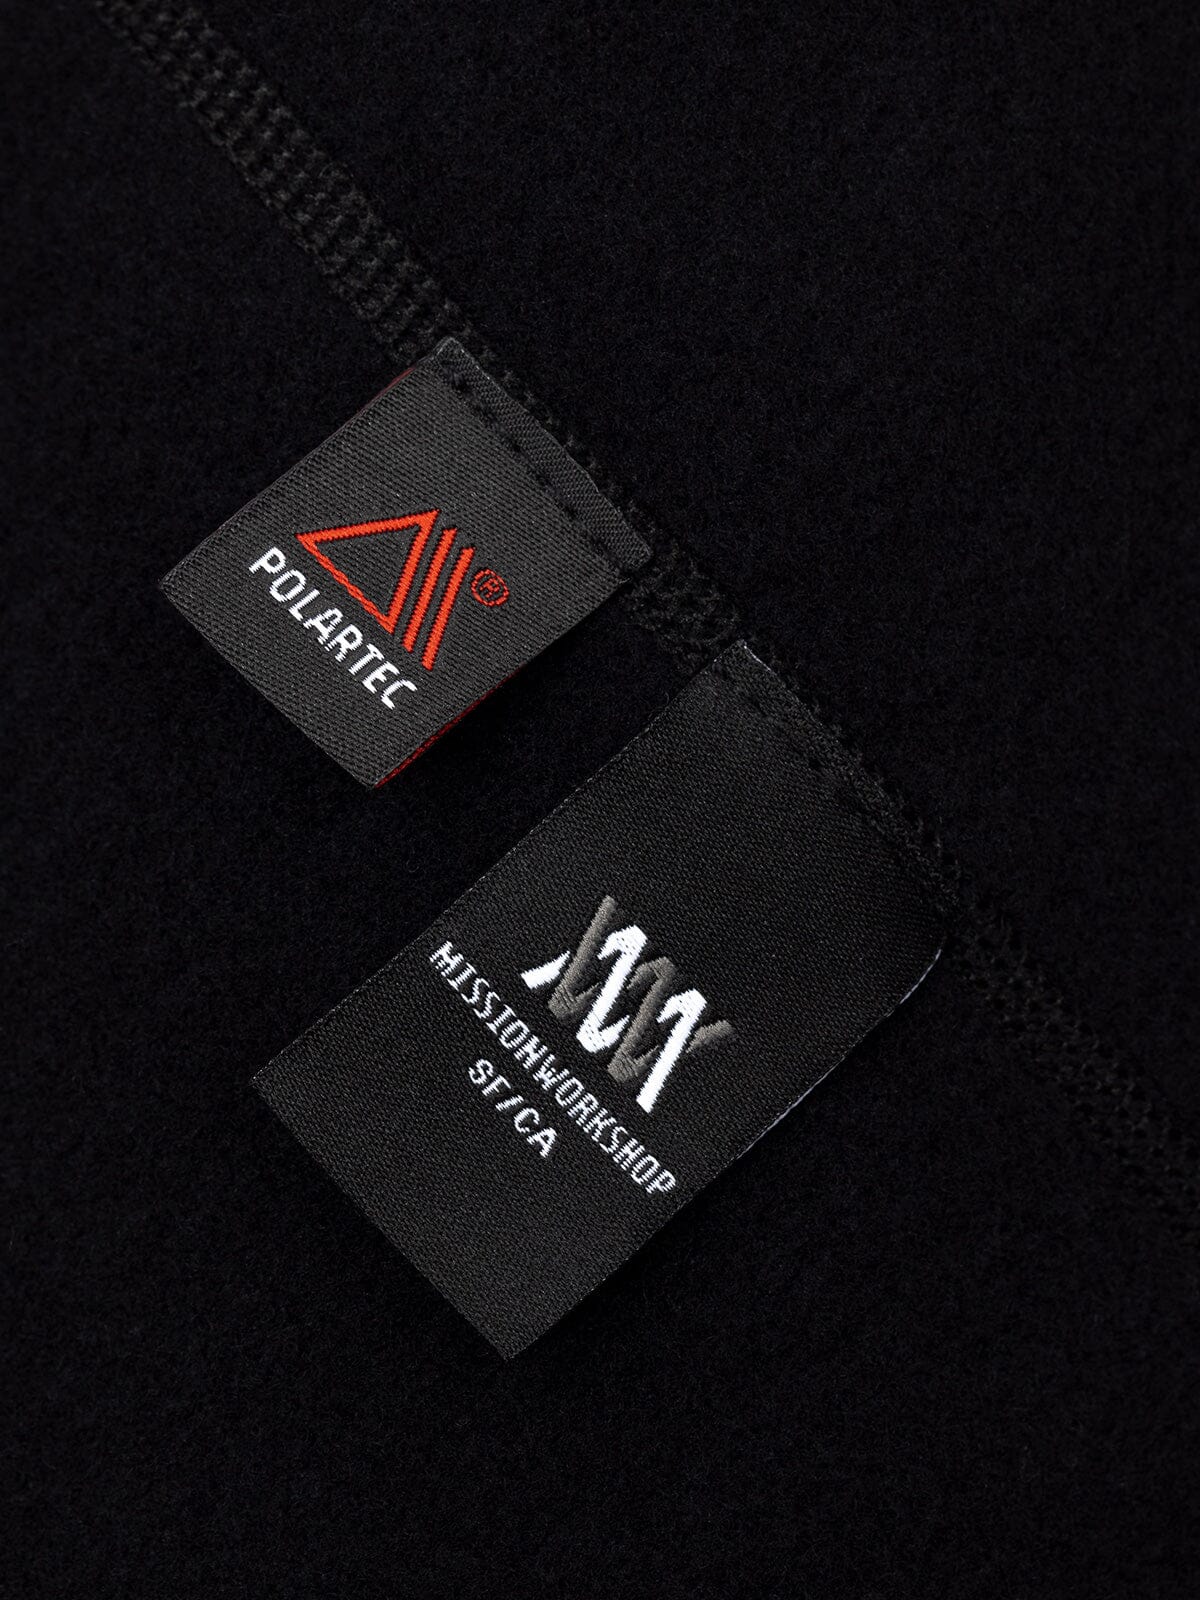 Mason : Power Wool by Mission Workshop - Säänkestävät laukut ja tekniset vaatteet - San Francisco & Los Angeles - Rakennettu kestämään - ikuinen takuu